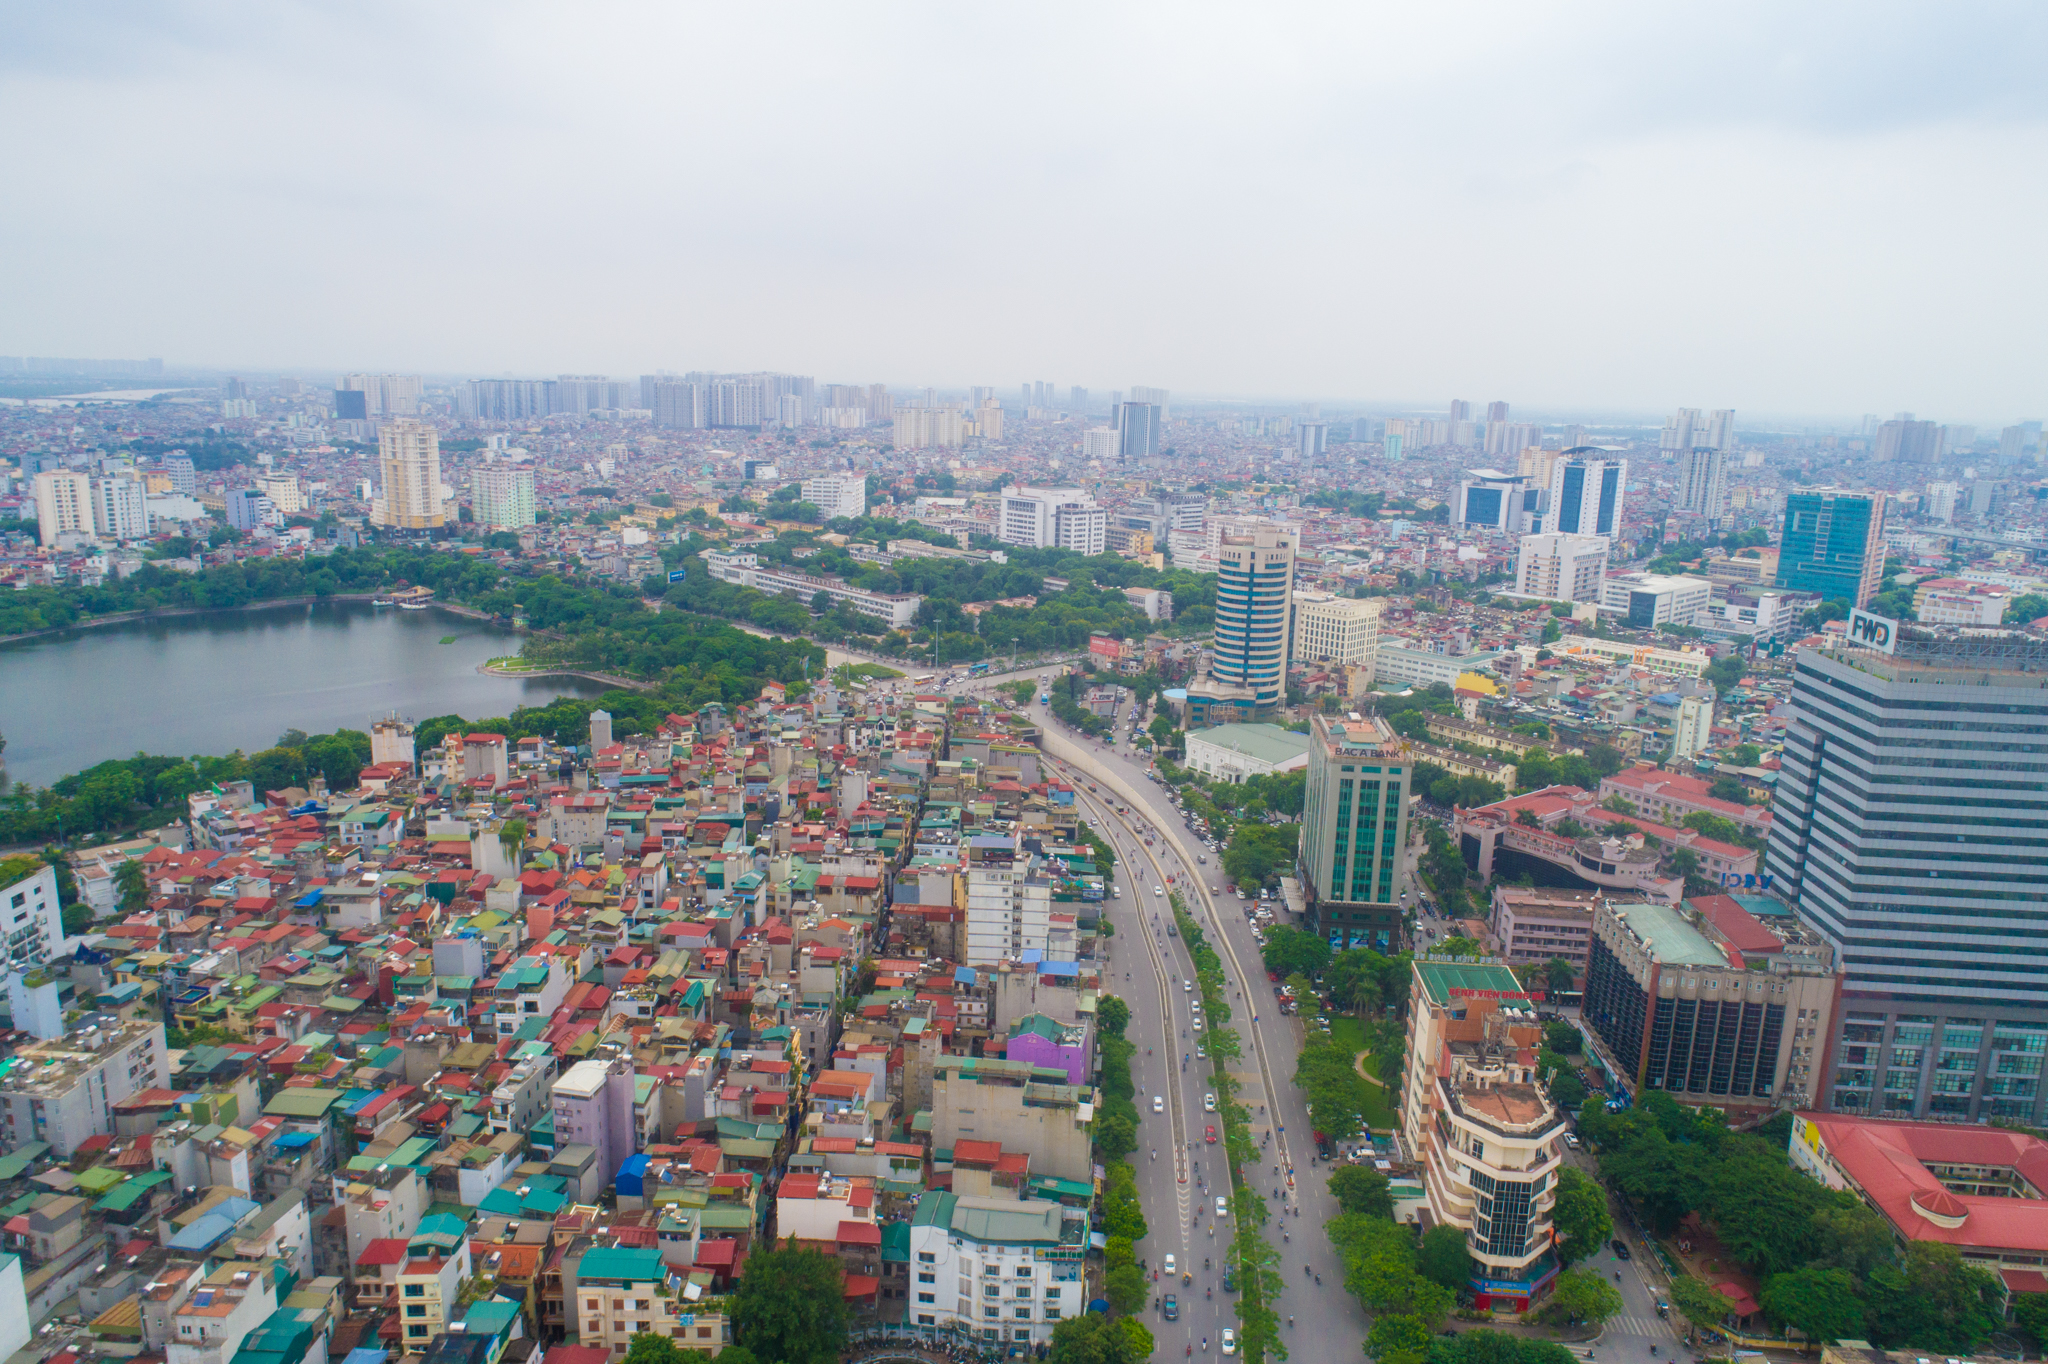 Đường vành đai 1 là con đường vành đai đầu tiên của Hà Nội, có ý nghĩa chiến lược trong việc cải thiện hạ tầng giao thông cũng như thúc đẩy sự phát triển kinh tế xã hội của thủ đô. (Ảnh: Minh Sơn/Vietnam+)